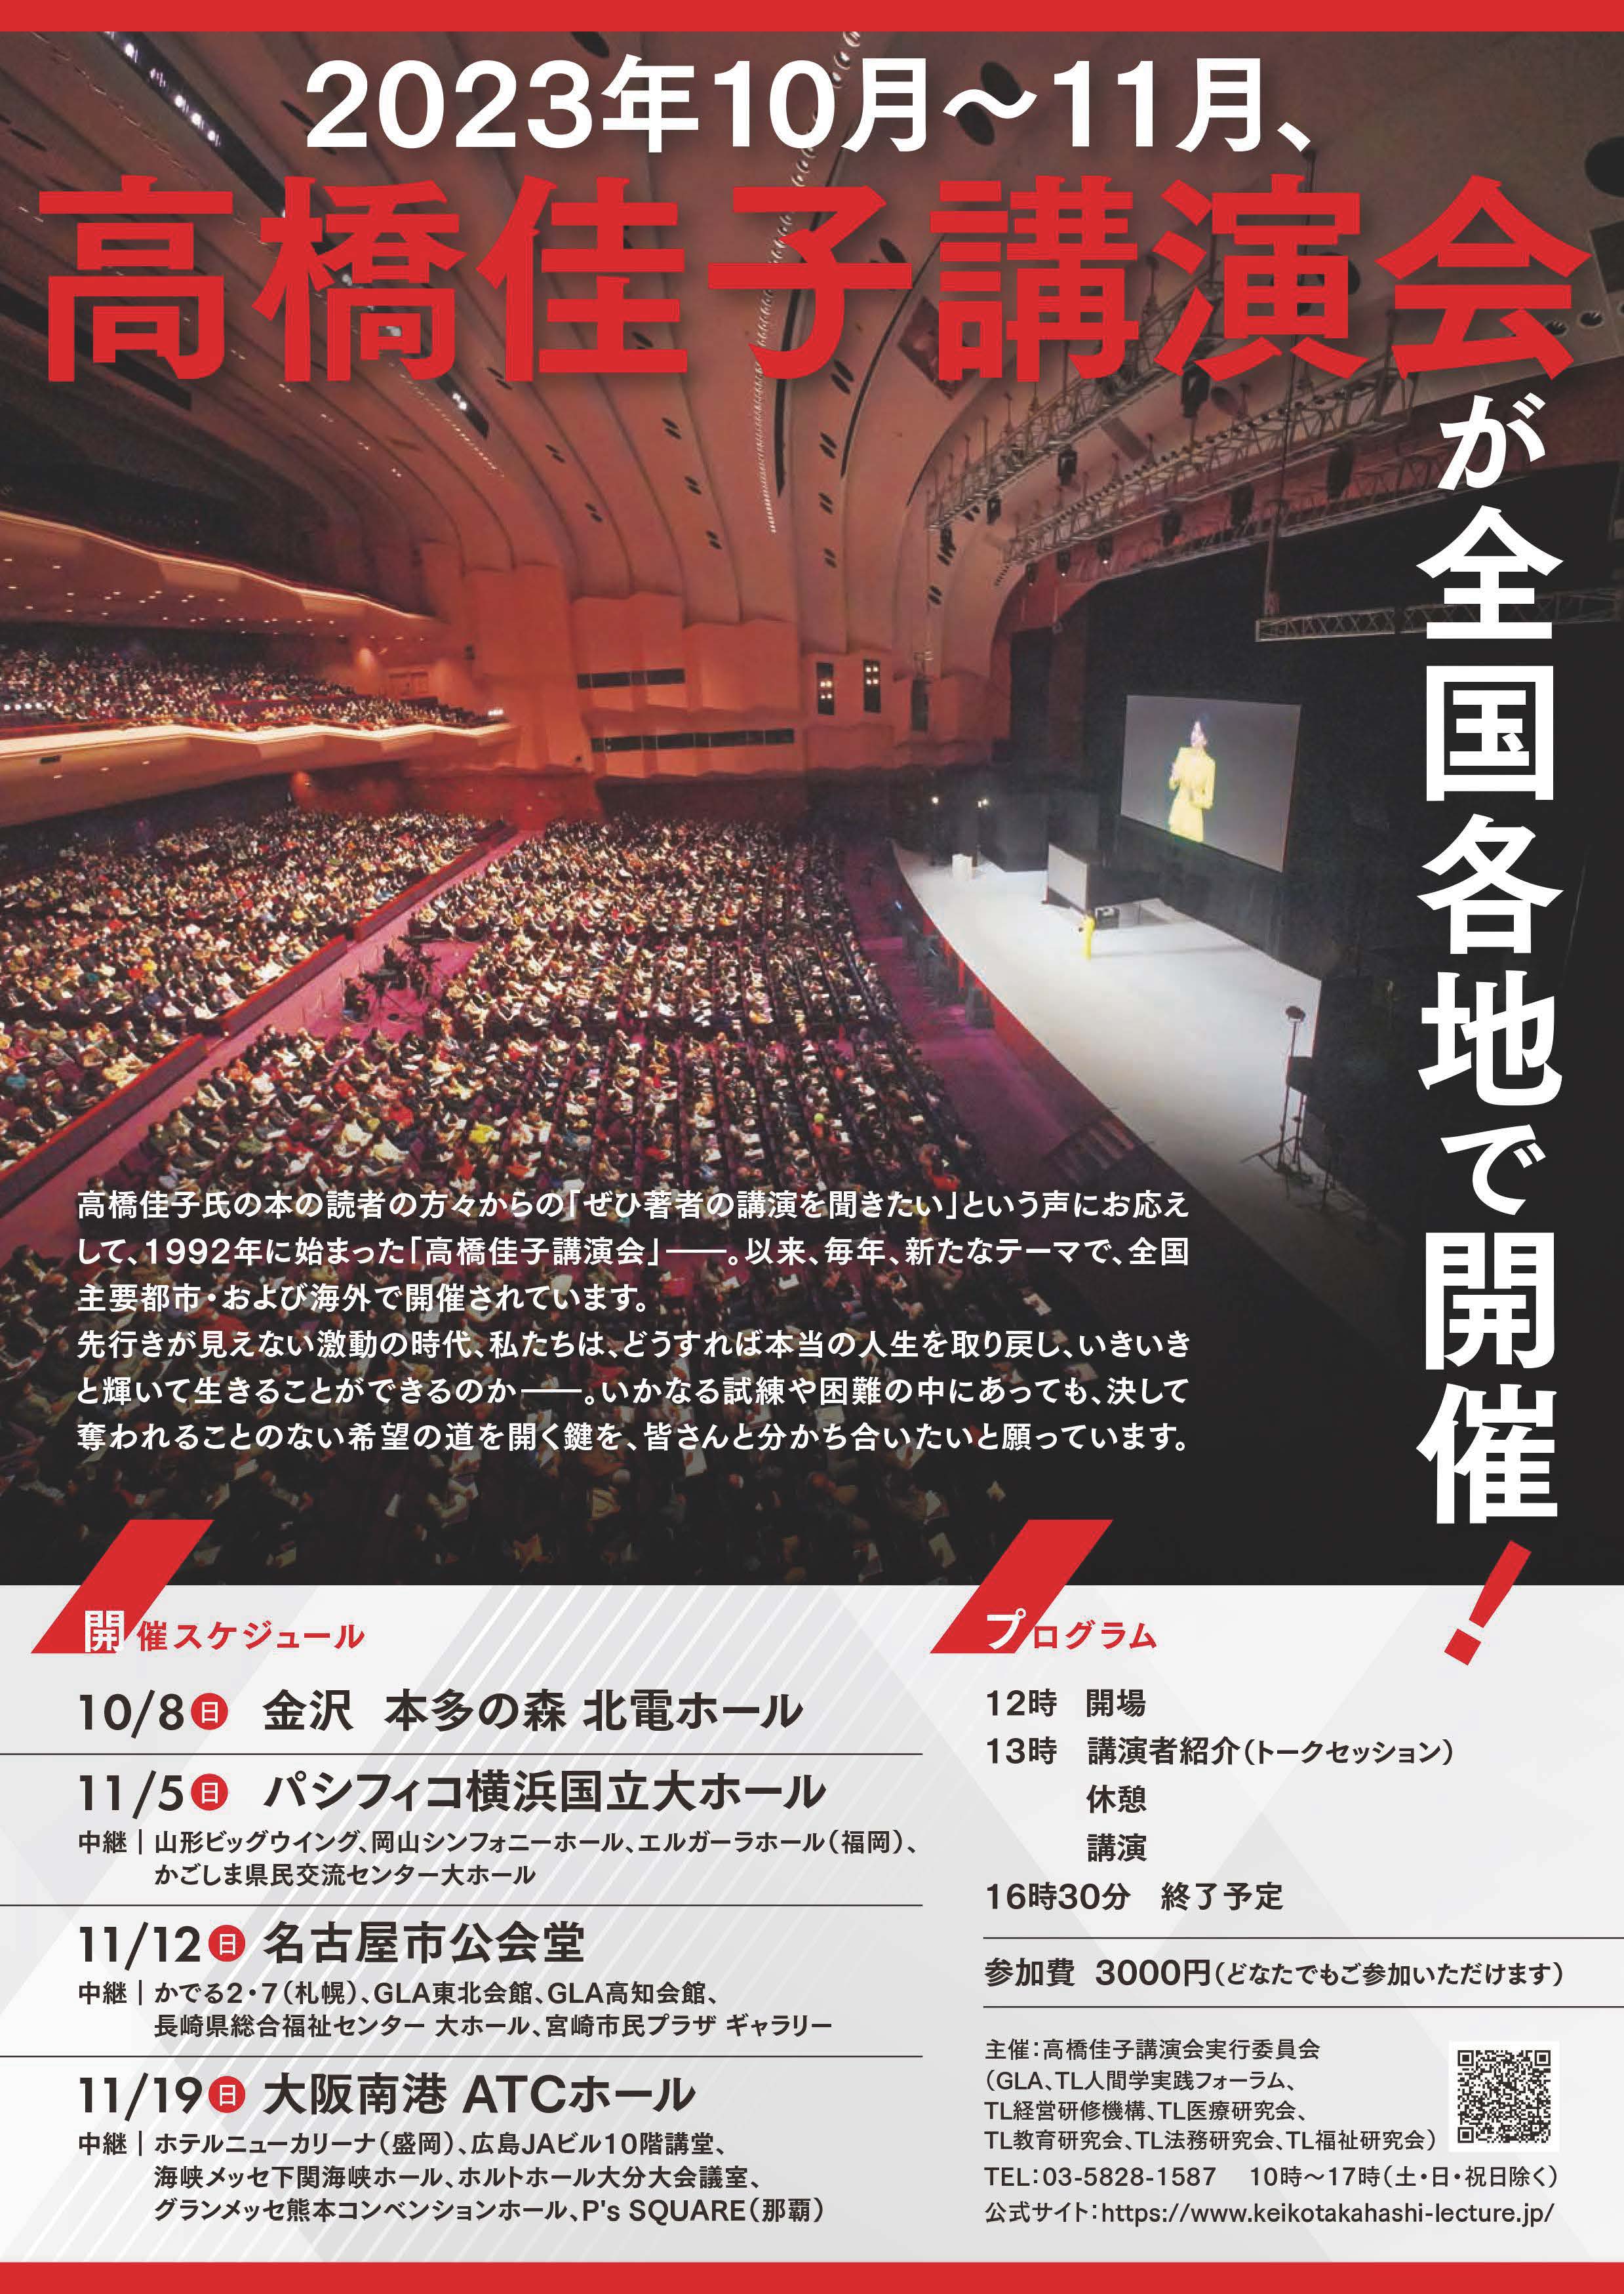 高橋佳子先生 ご講演DVD 2013 TL人間学セミナー